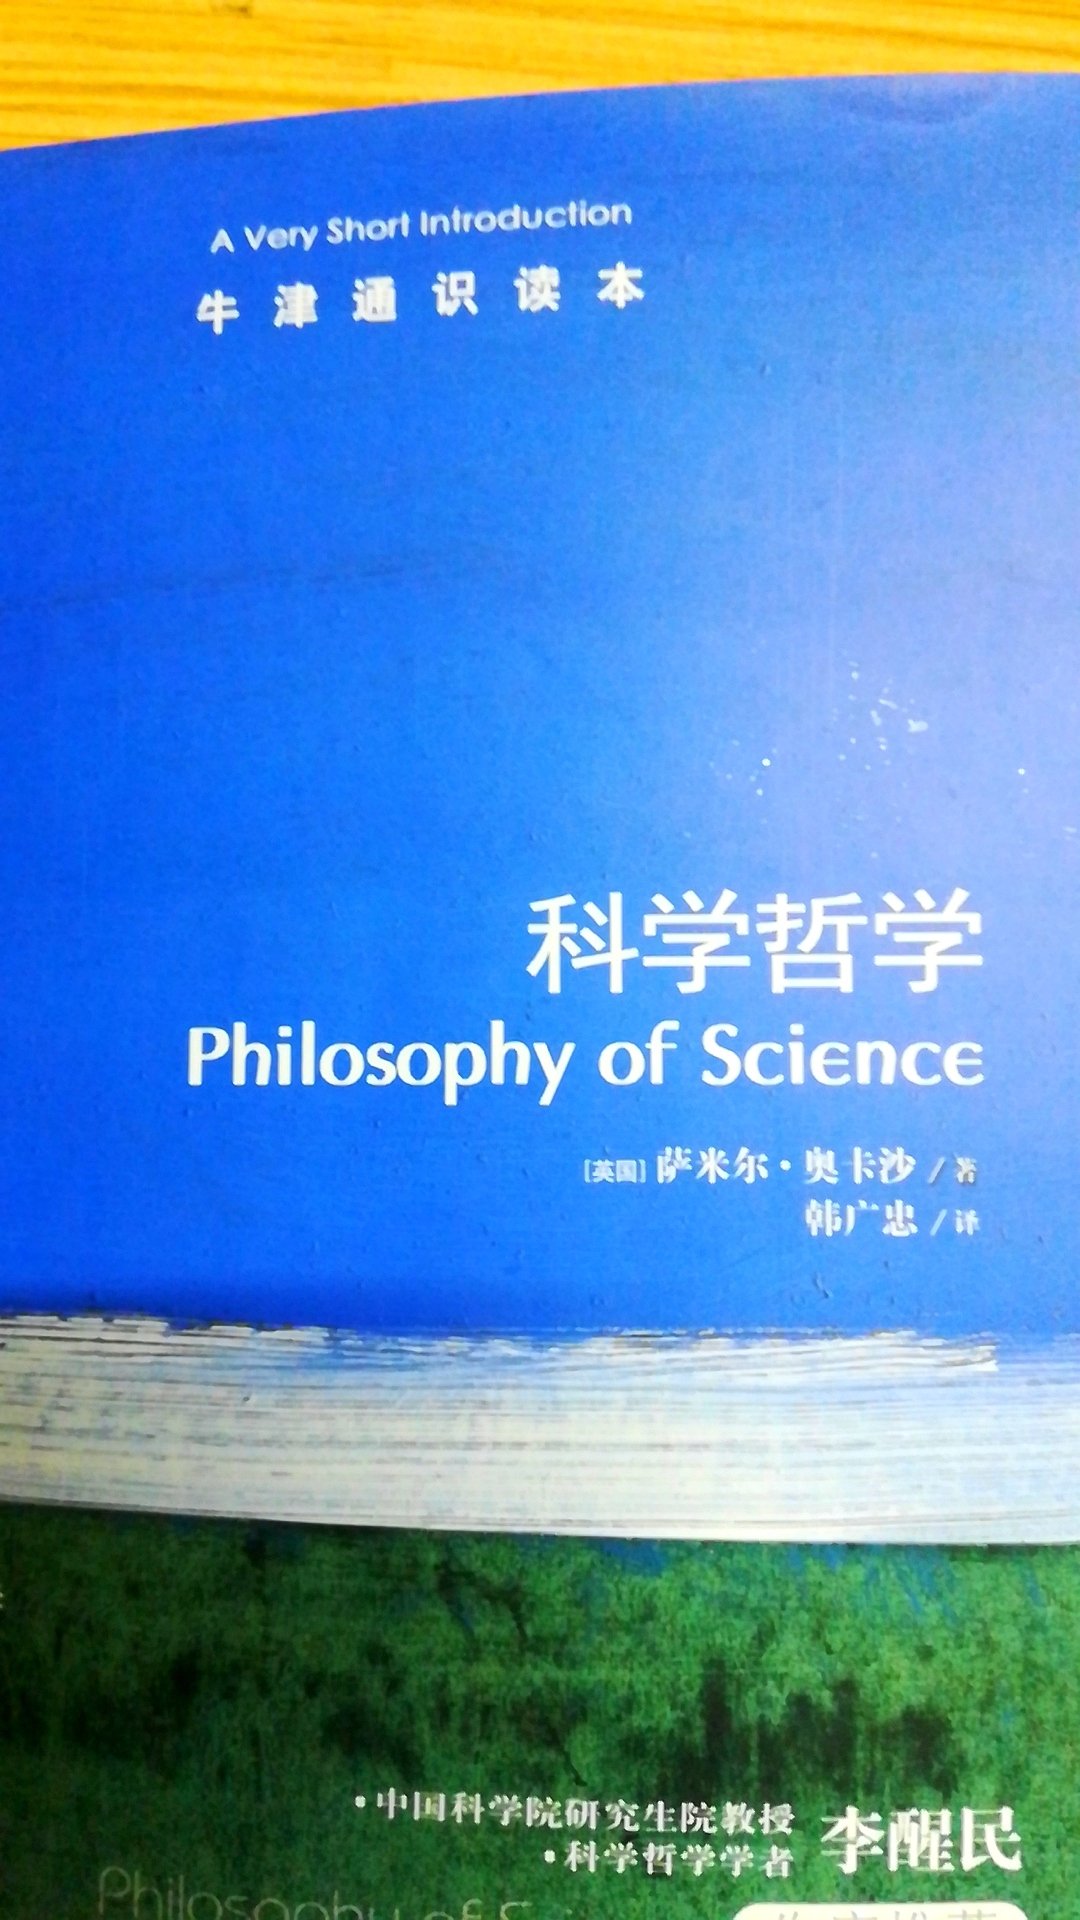 书很快就到了，还是中英文对照版的。前面部分是中文，后面是英文，对于喜欢原版的人很好。我只能看懂中文。